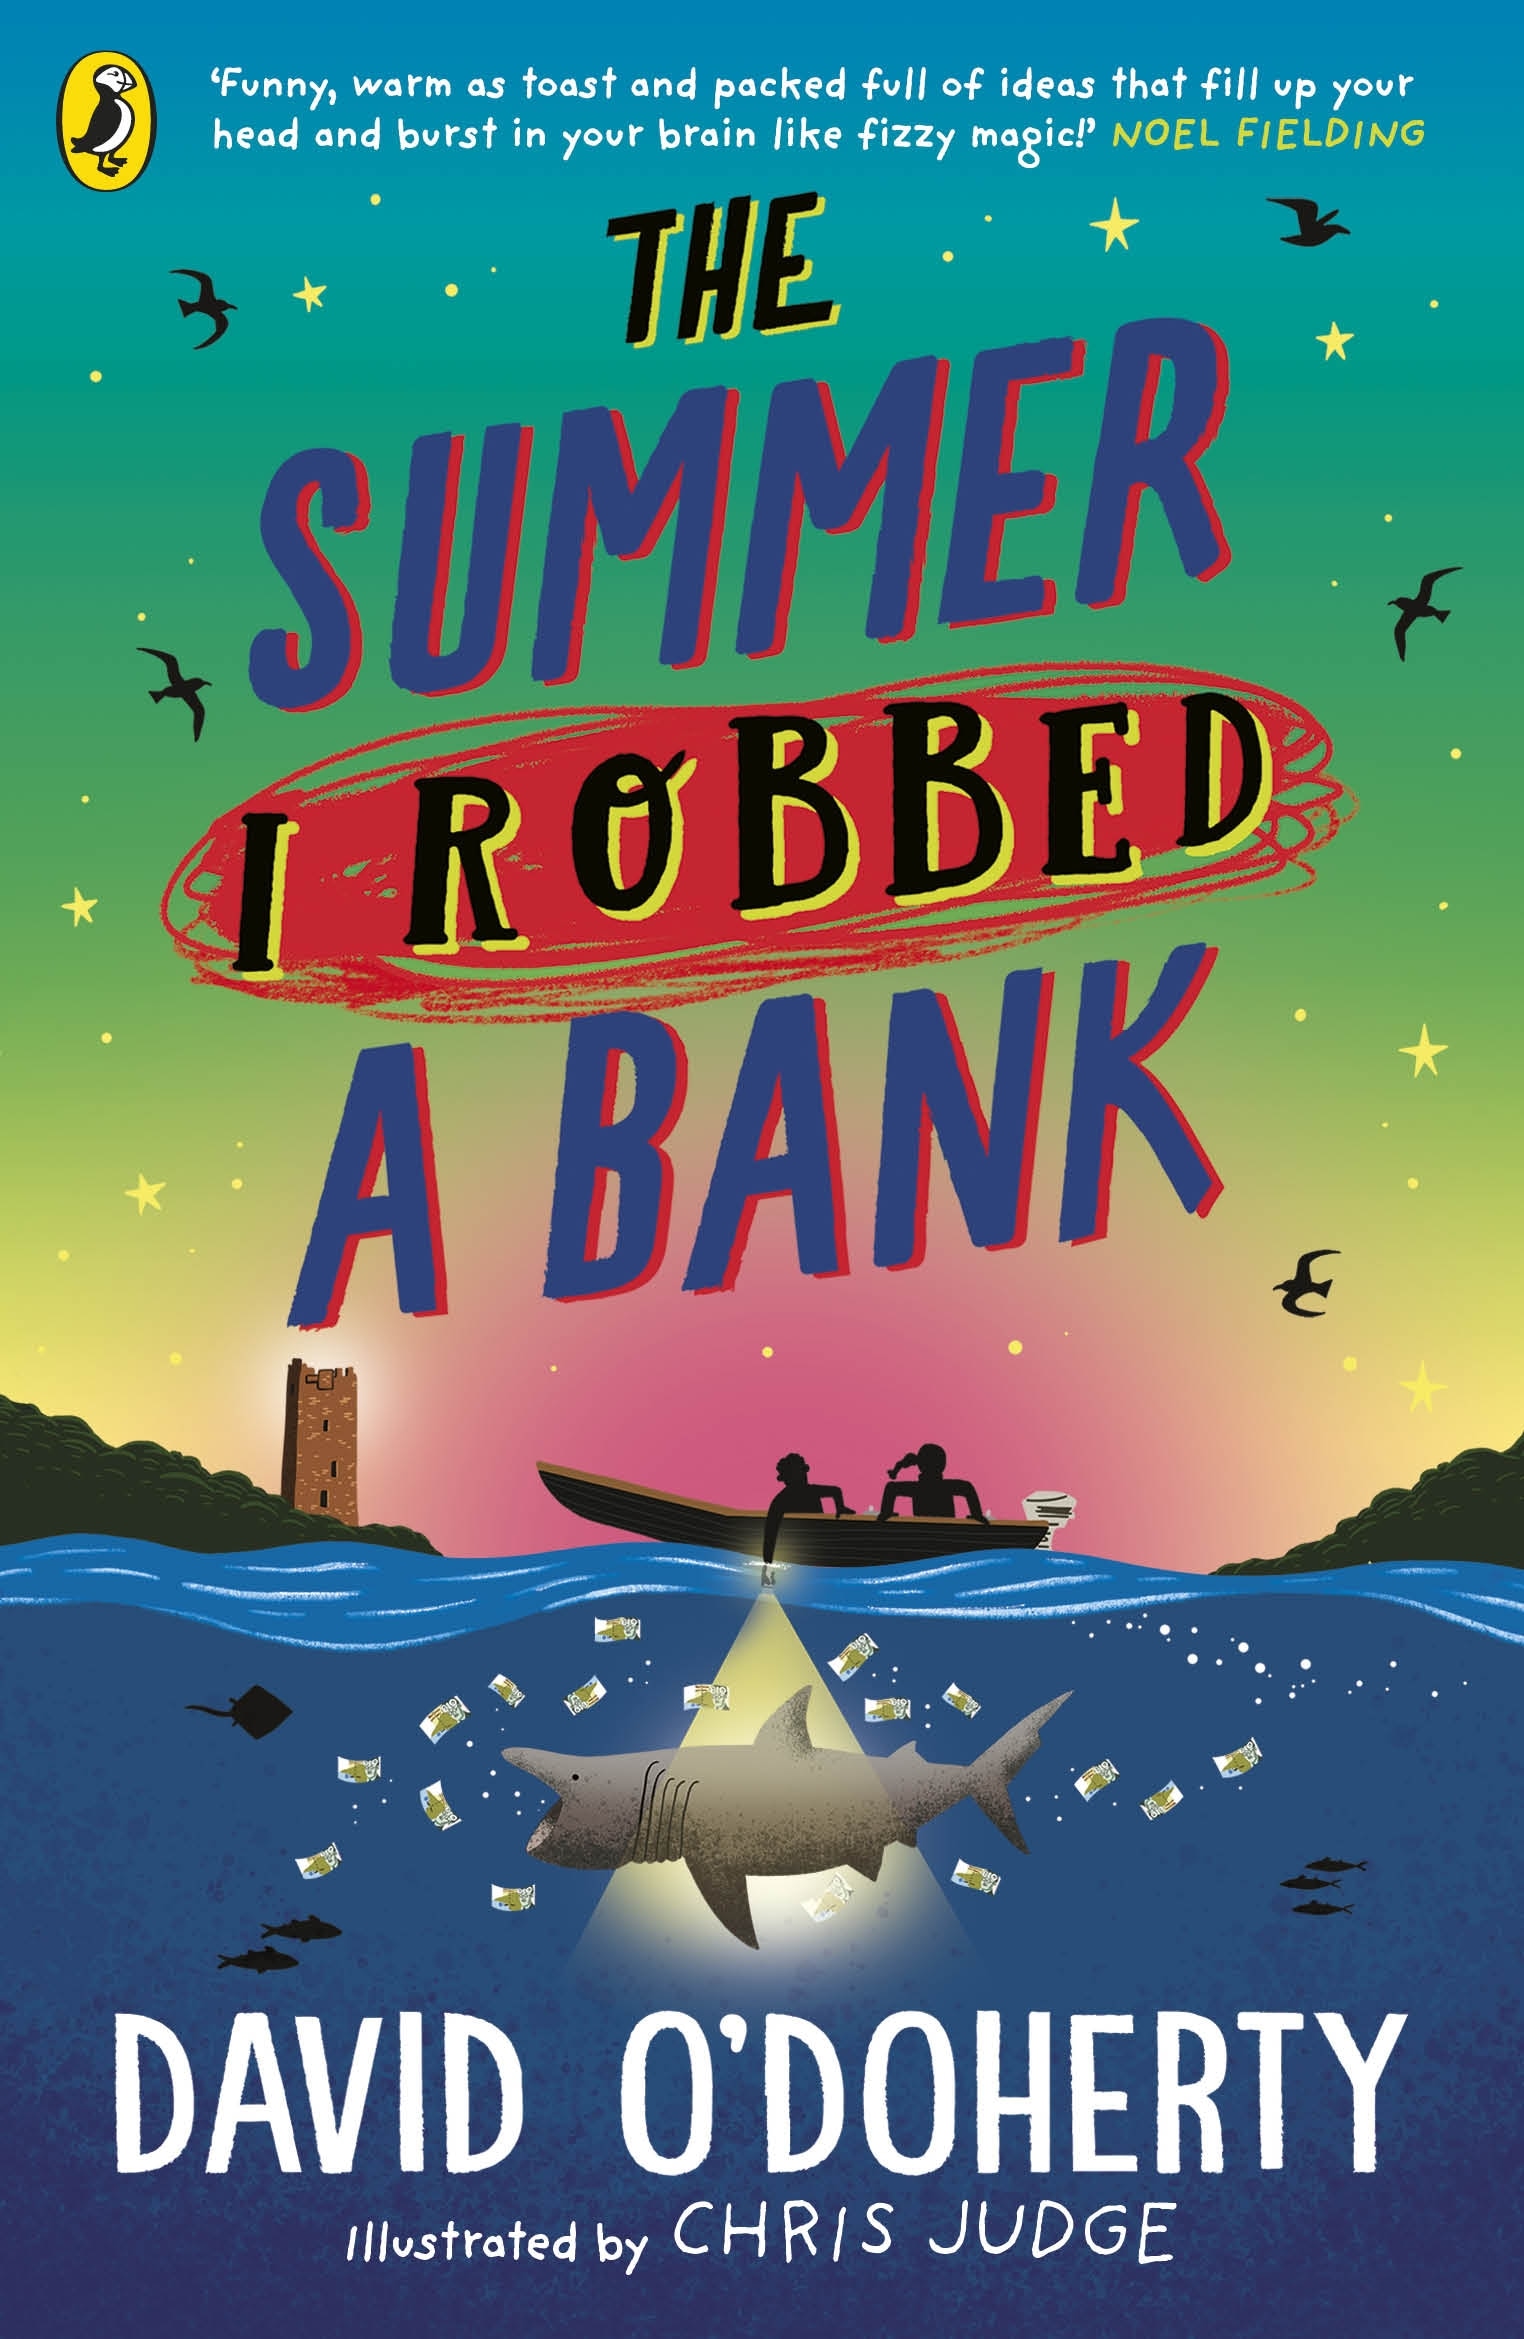 Book “The Summer I Robbed A Bank” by David O'Doherty — May 27, 2021